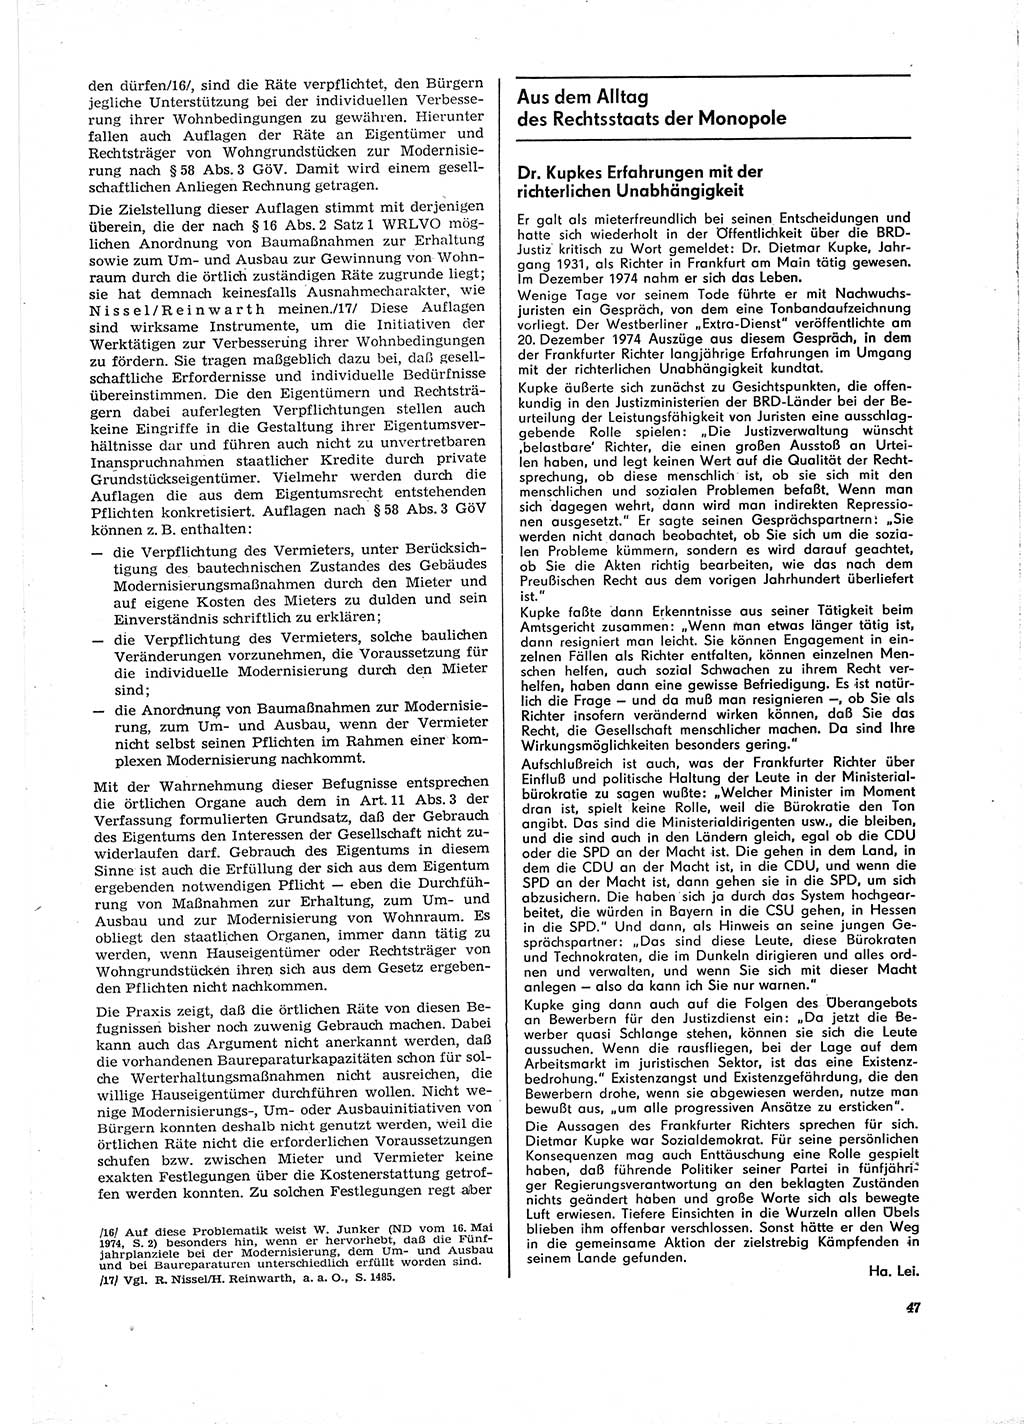 Neue Justiz (NJ), Zeitschrift für Recht und Rechtswissenschaft [Deutsche Demokratische Republik (DDR)], 29. Jahrgang 1975, Seite 47 (NJ DDR 1975, S. 47)